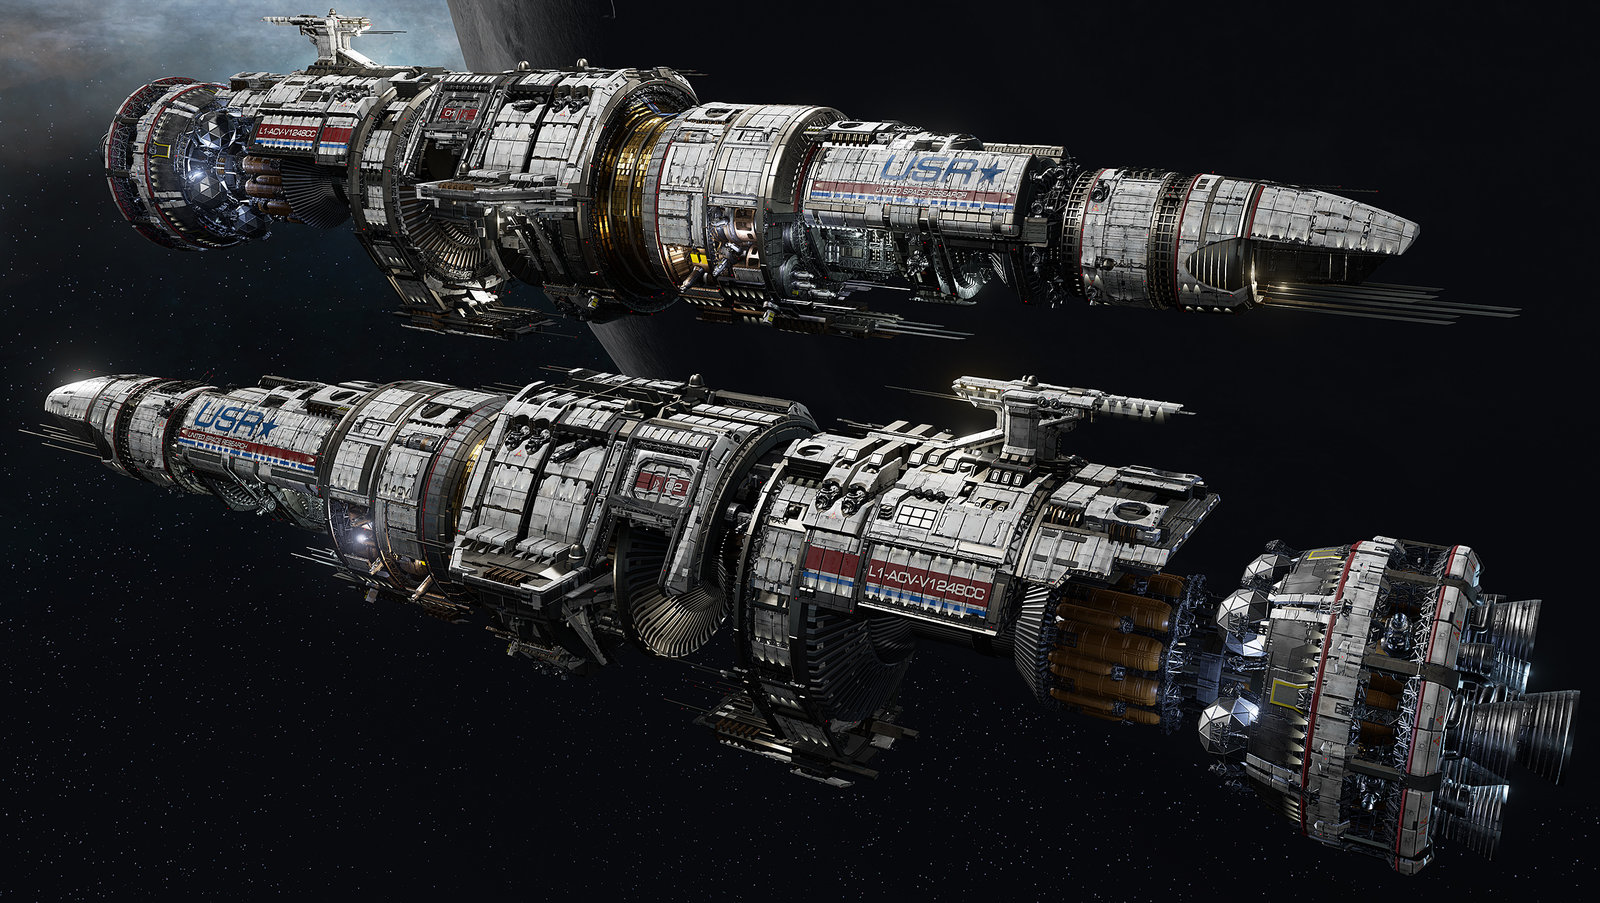 USR "Flagship" - Fractured Space